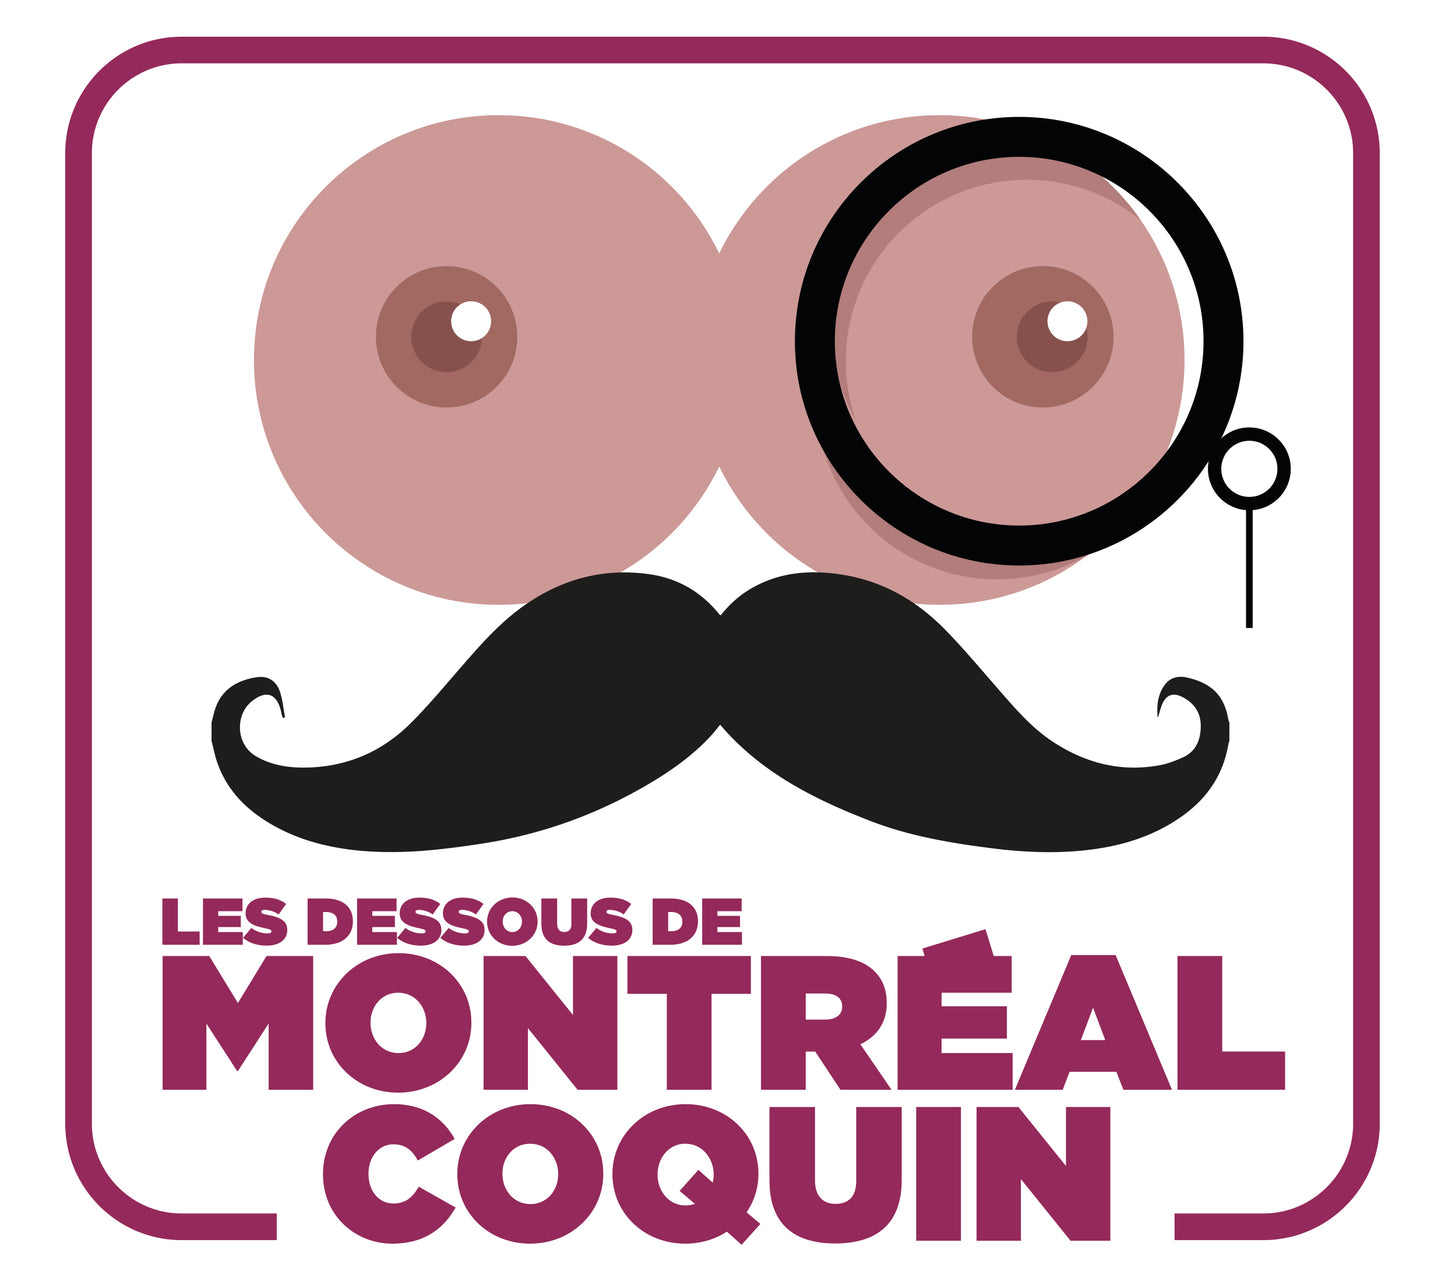 Notre guide de notre Montréal Coquin - Plus de 50 adresses coquines et de nombreuses réductions